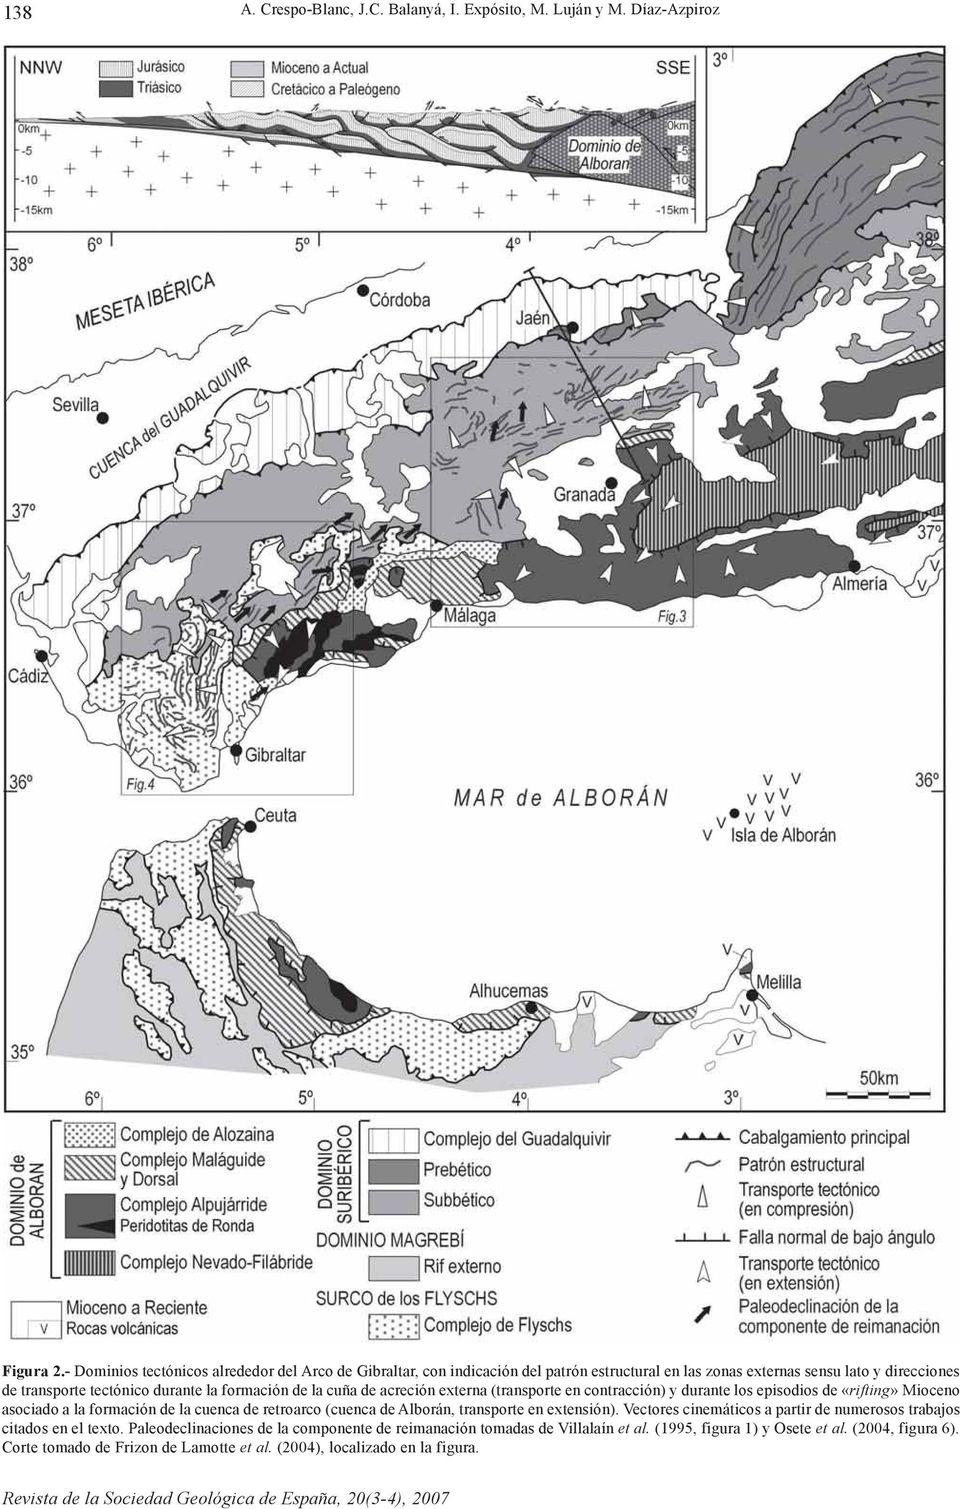 de la cuña de acreción externa (transporte en contracción) y durante los episodios de «rifting» Mioceno asociado a la formación de la cuenca de retroarco (cuenca de Alborán, transporte